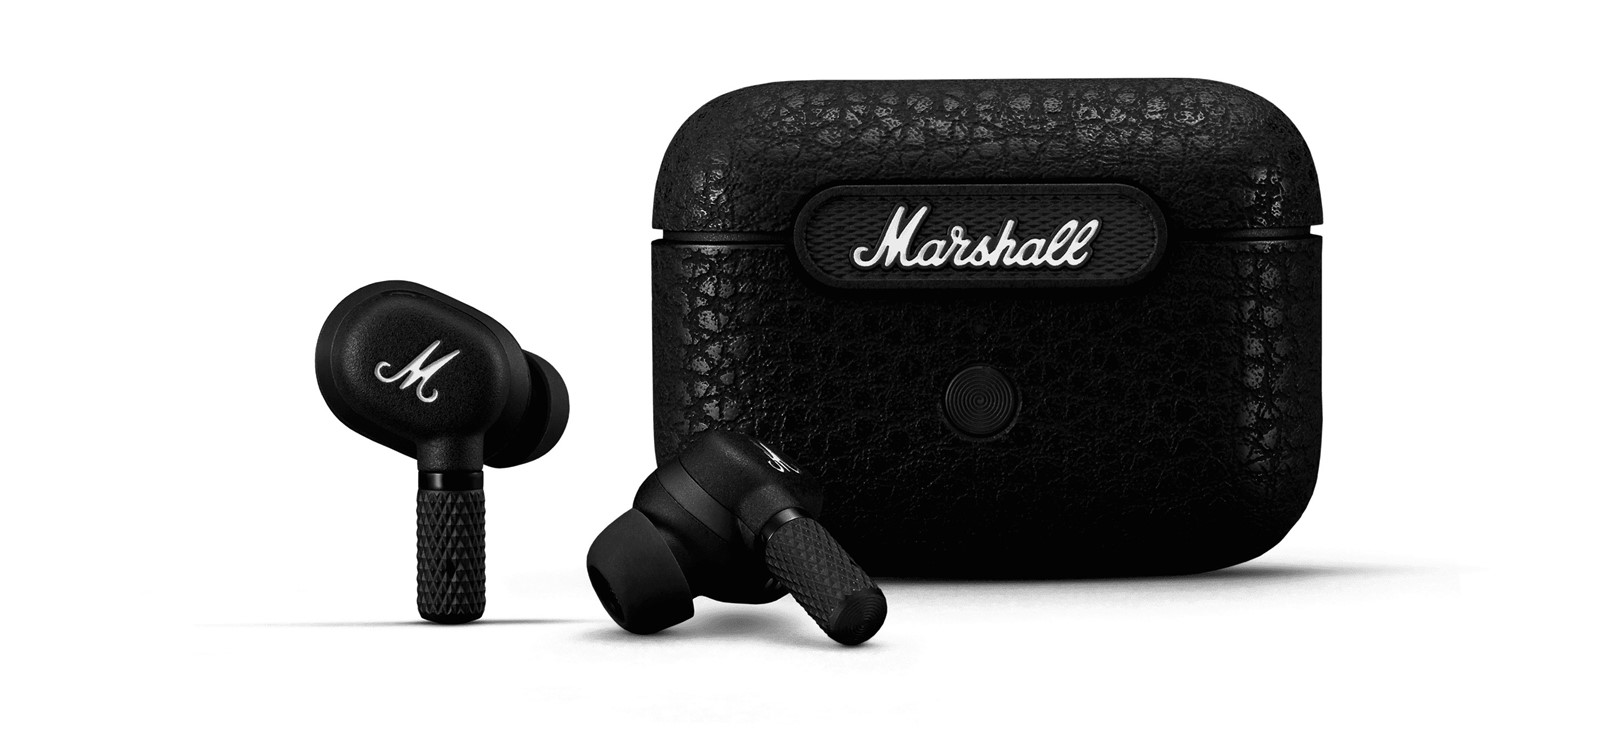 Pregledali smo ponudu Marshallovih bežičnih slušalica i zvučnika na domaćem  tržištu - Audio @ Bug.hr